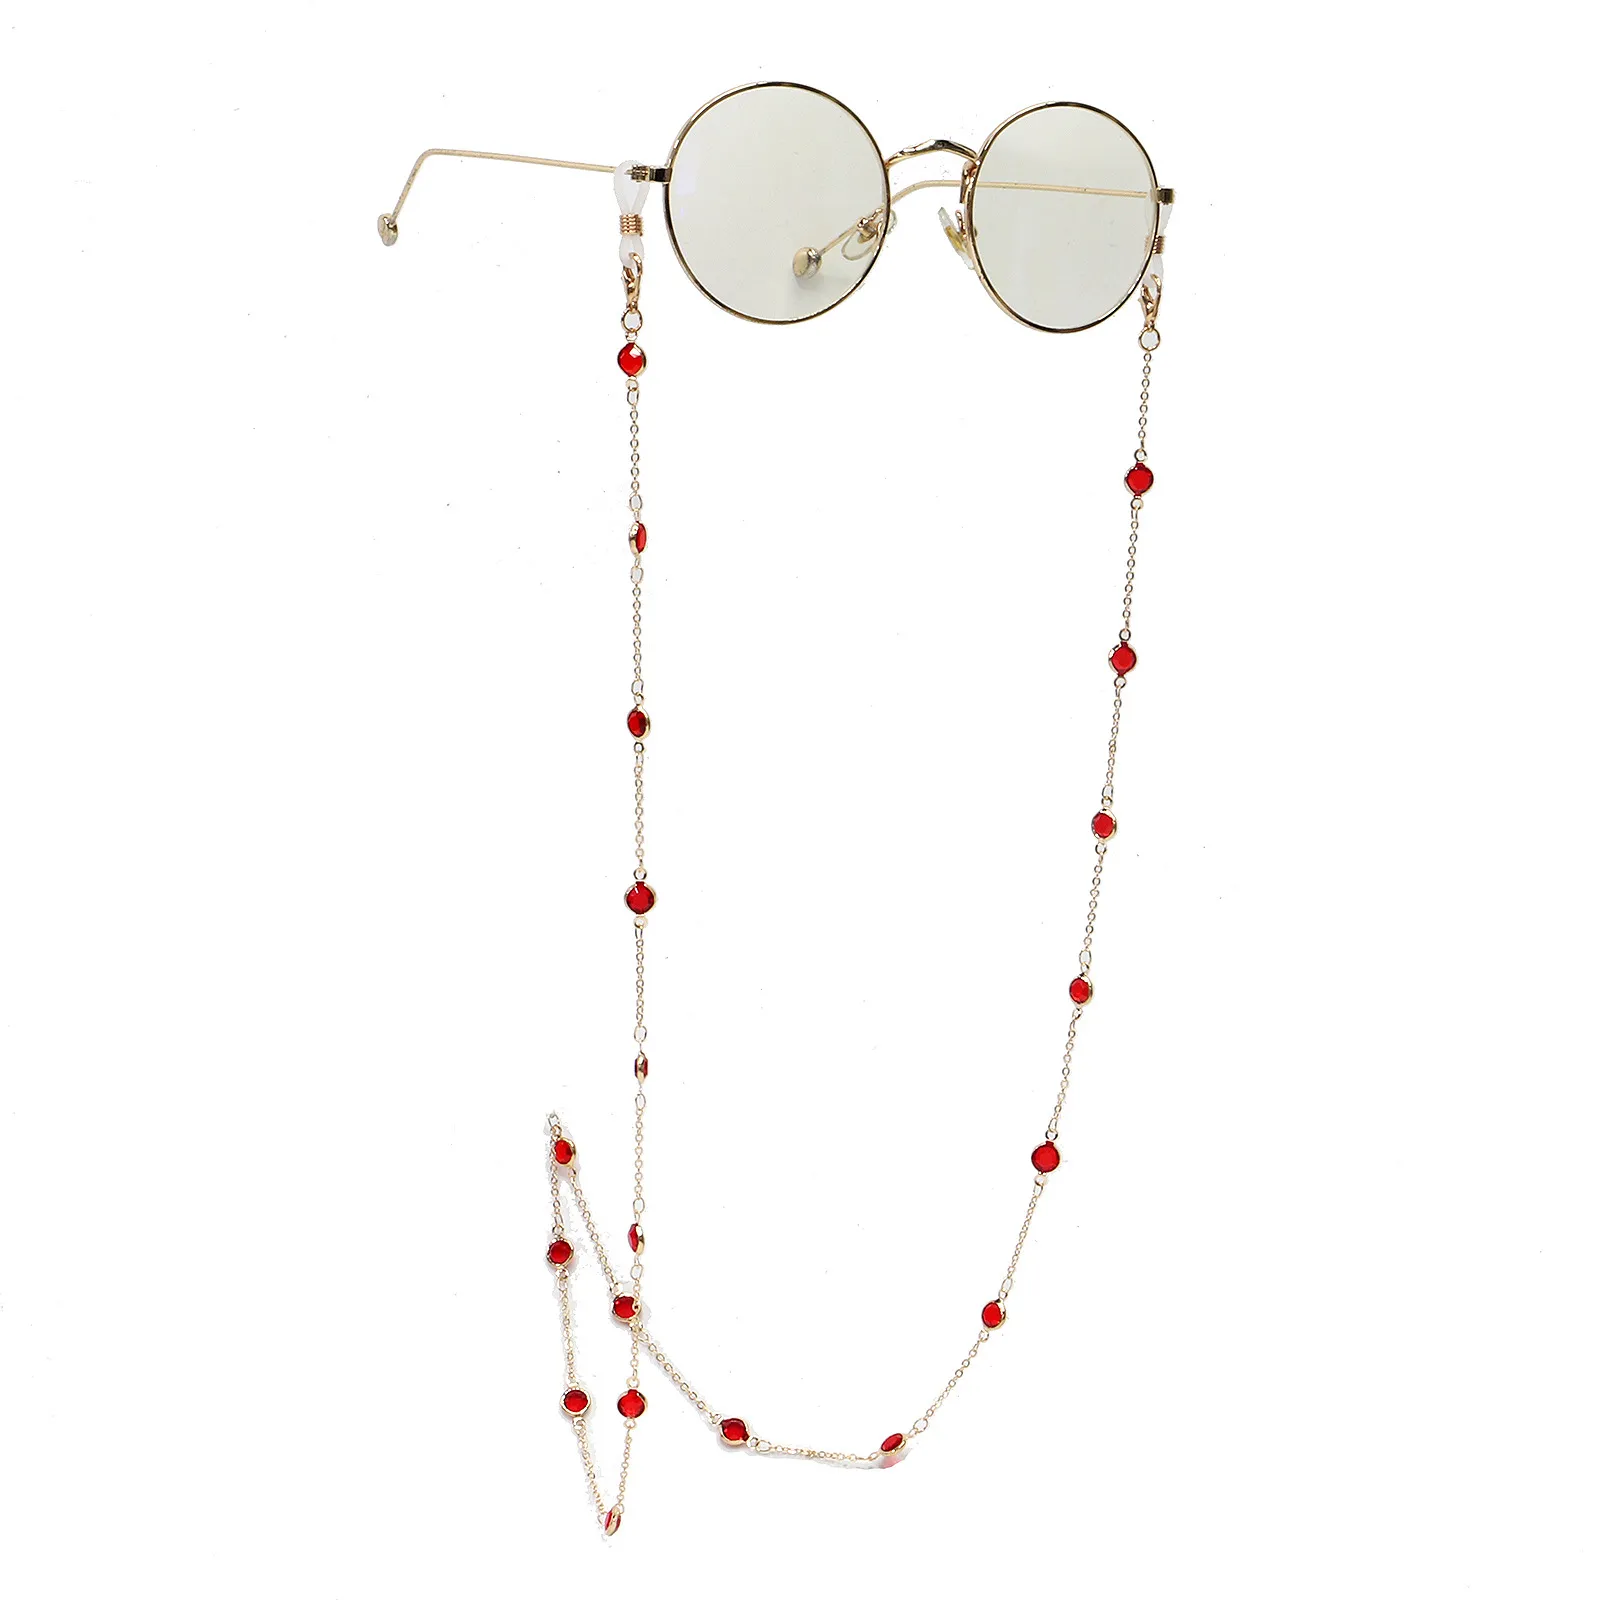 Brille Kette, Brillengurt für Frauen Sonnenbrille Brillenkette, Augenbrillenhalter um Hals 3404